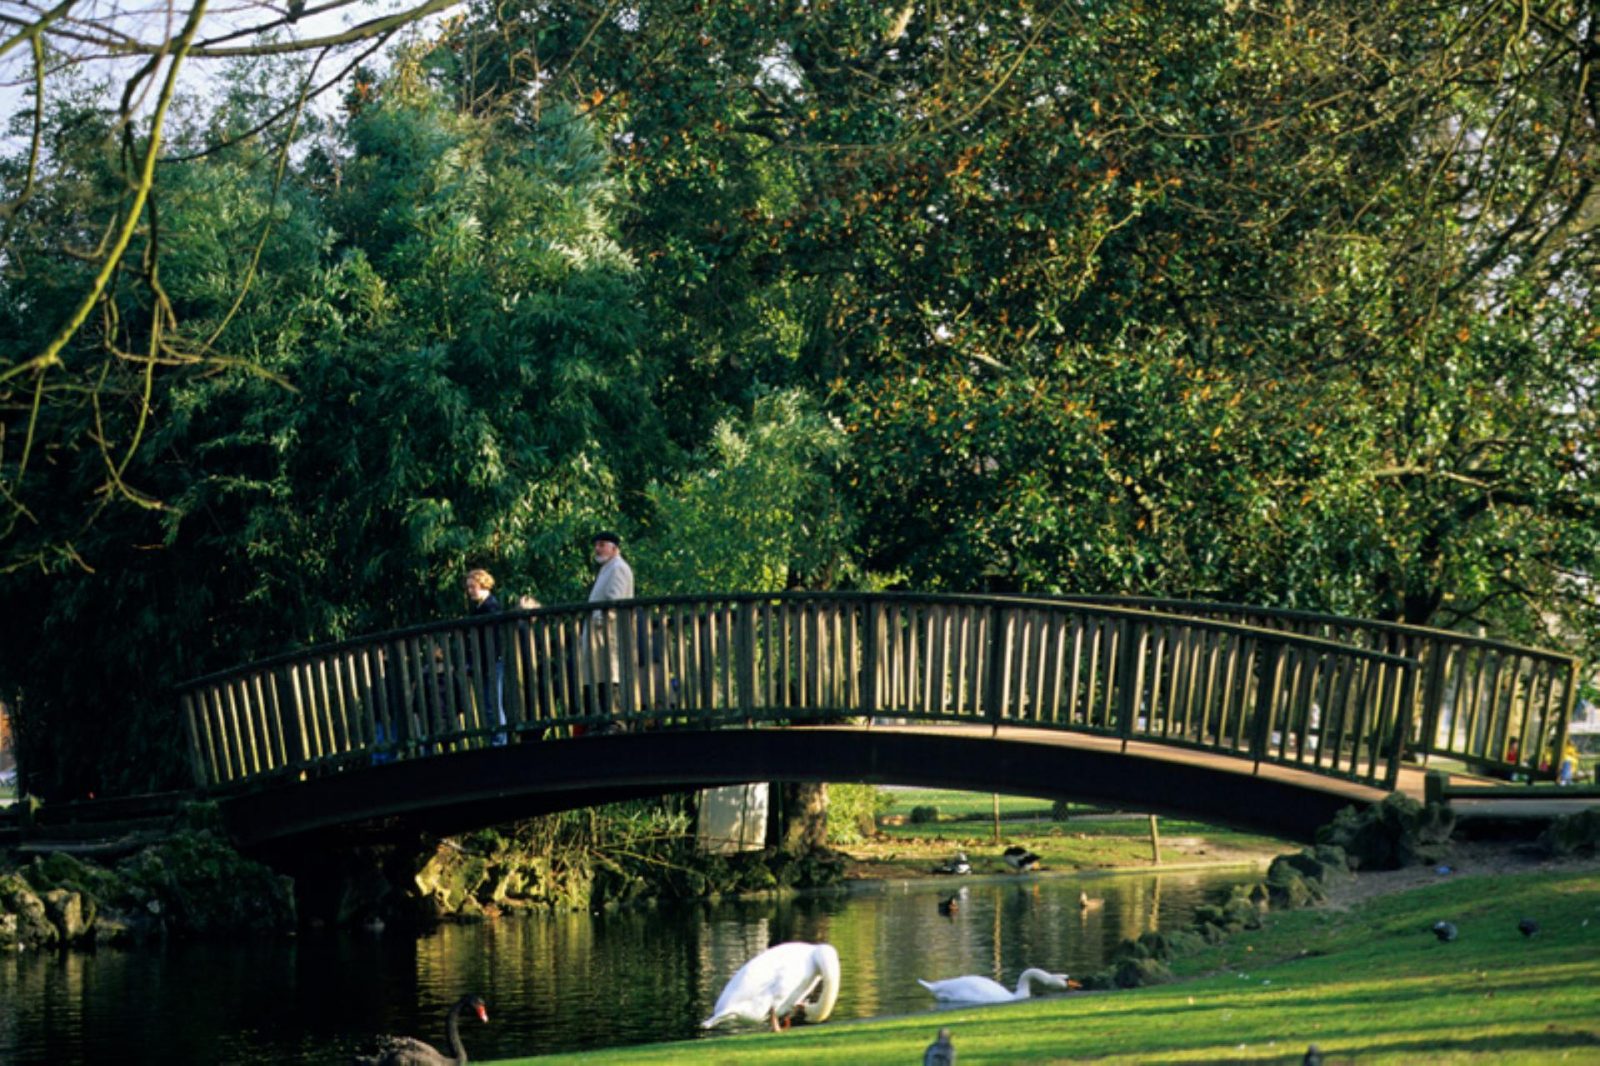 jardín público, el puente de madera